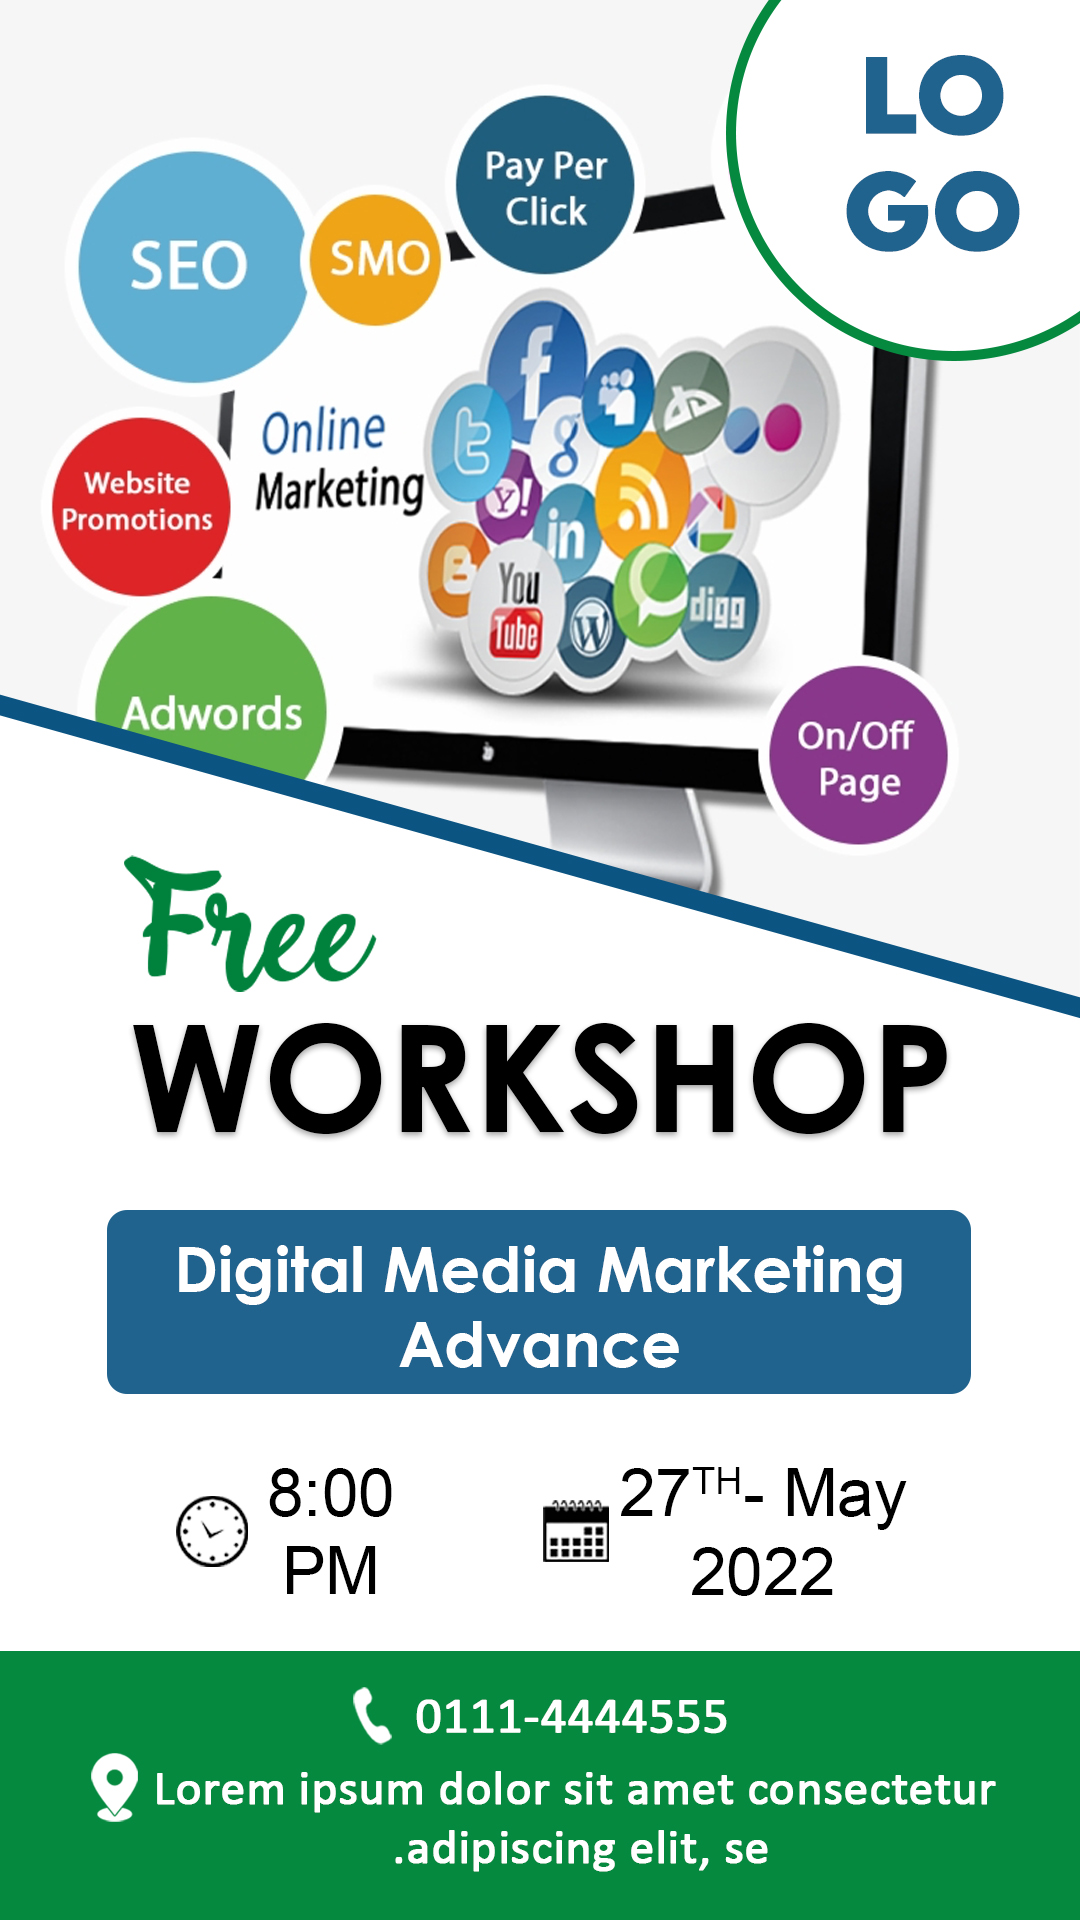 Digital Marketing workshop Facebook Banner preview image.